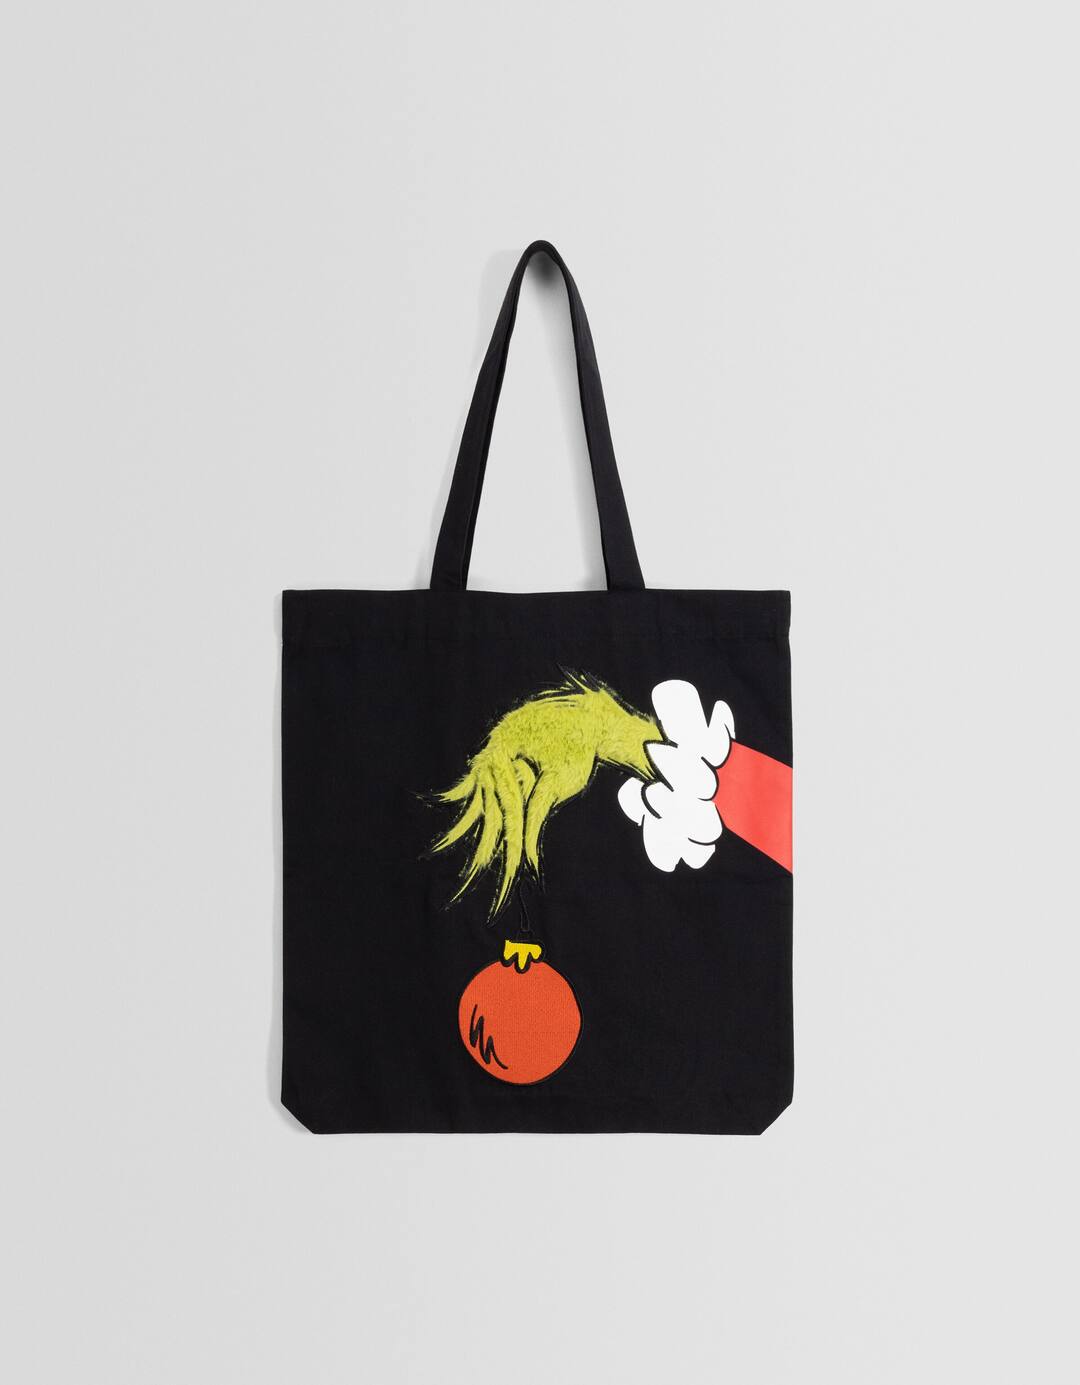 The Grinch print shopper bag